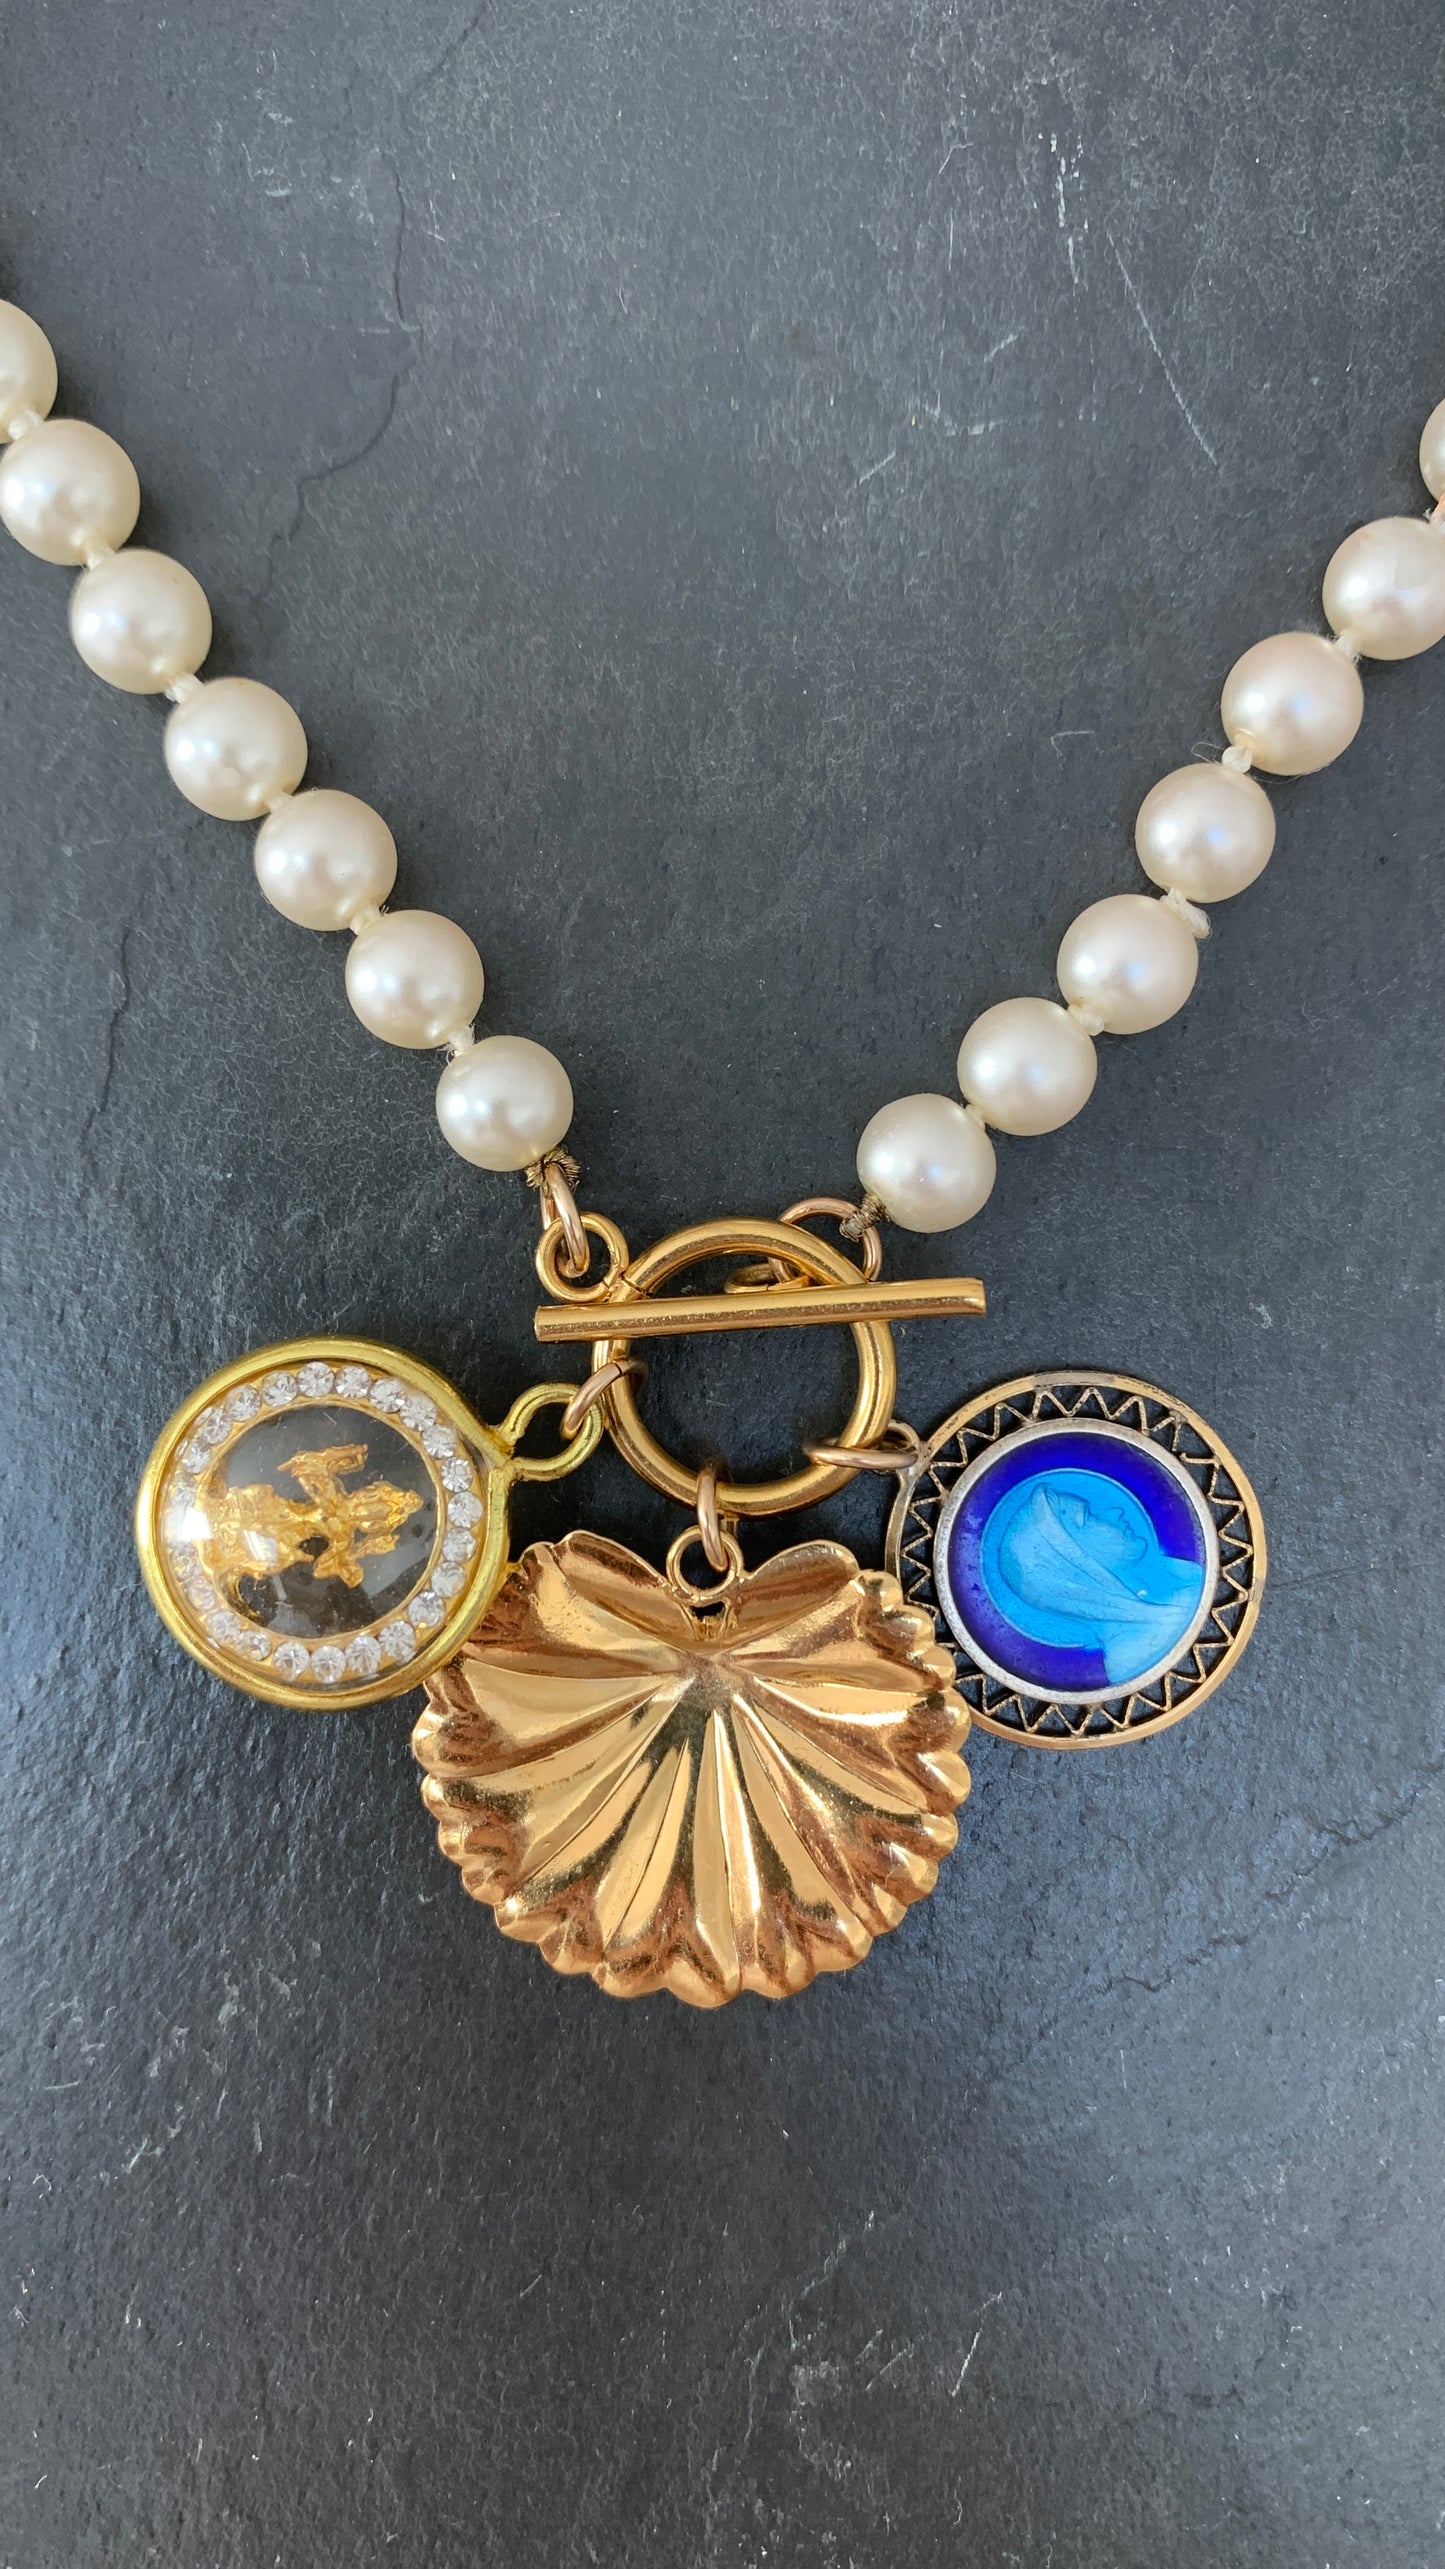 Collier de perles , Vierge émaillée et Bhrama